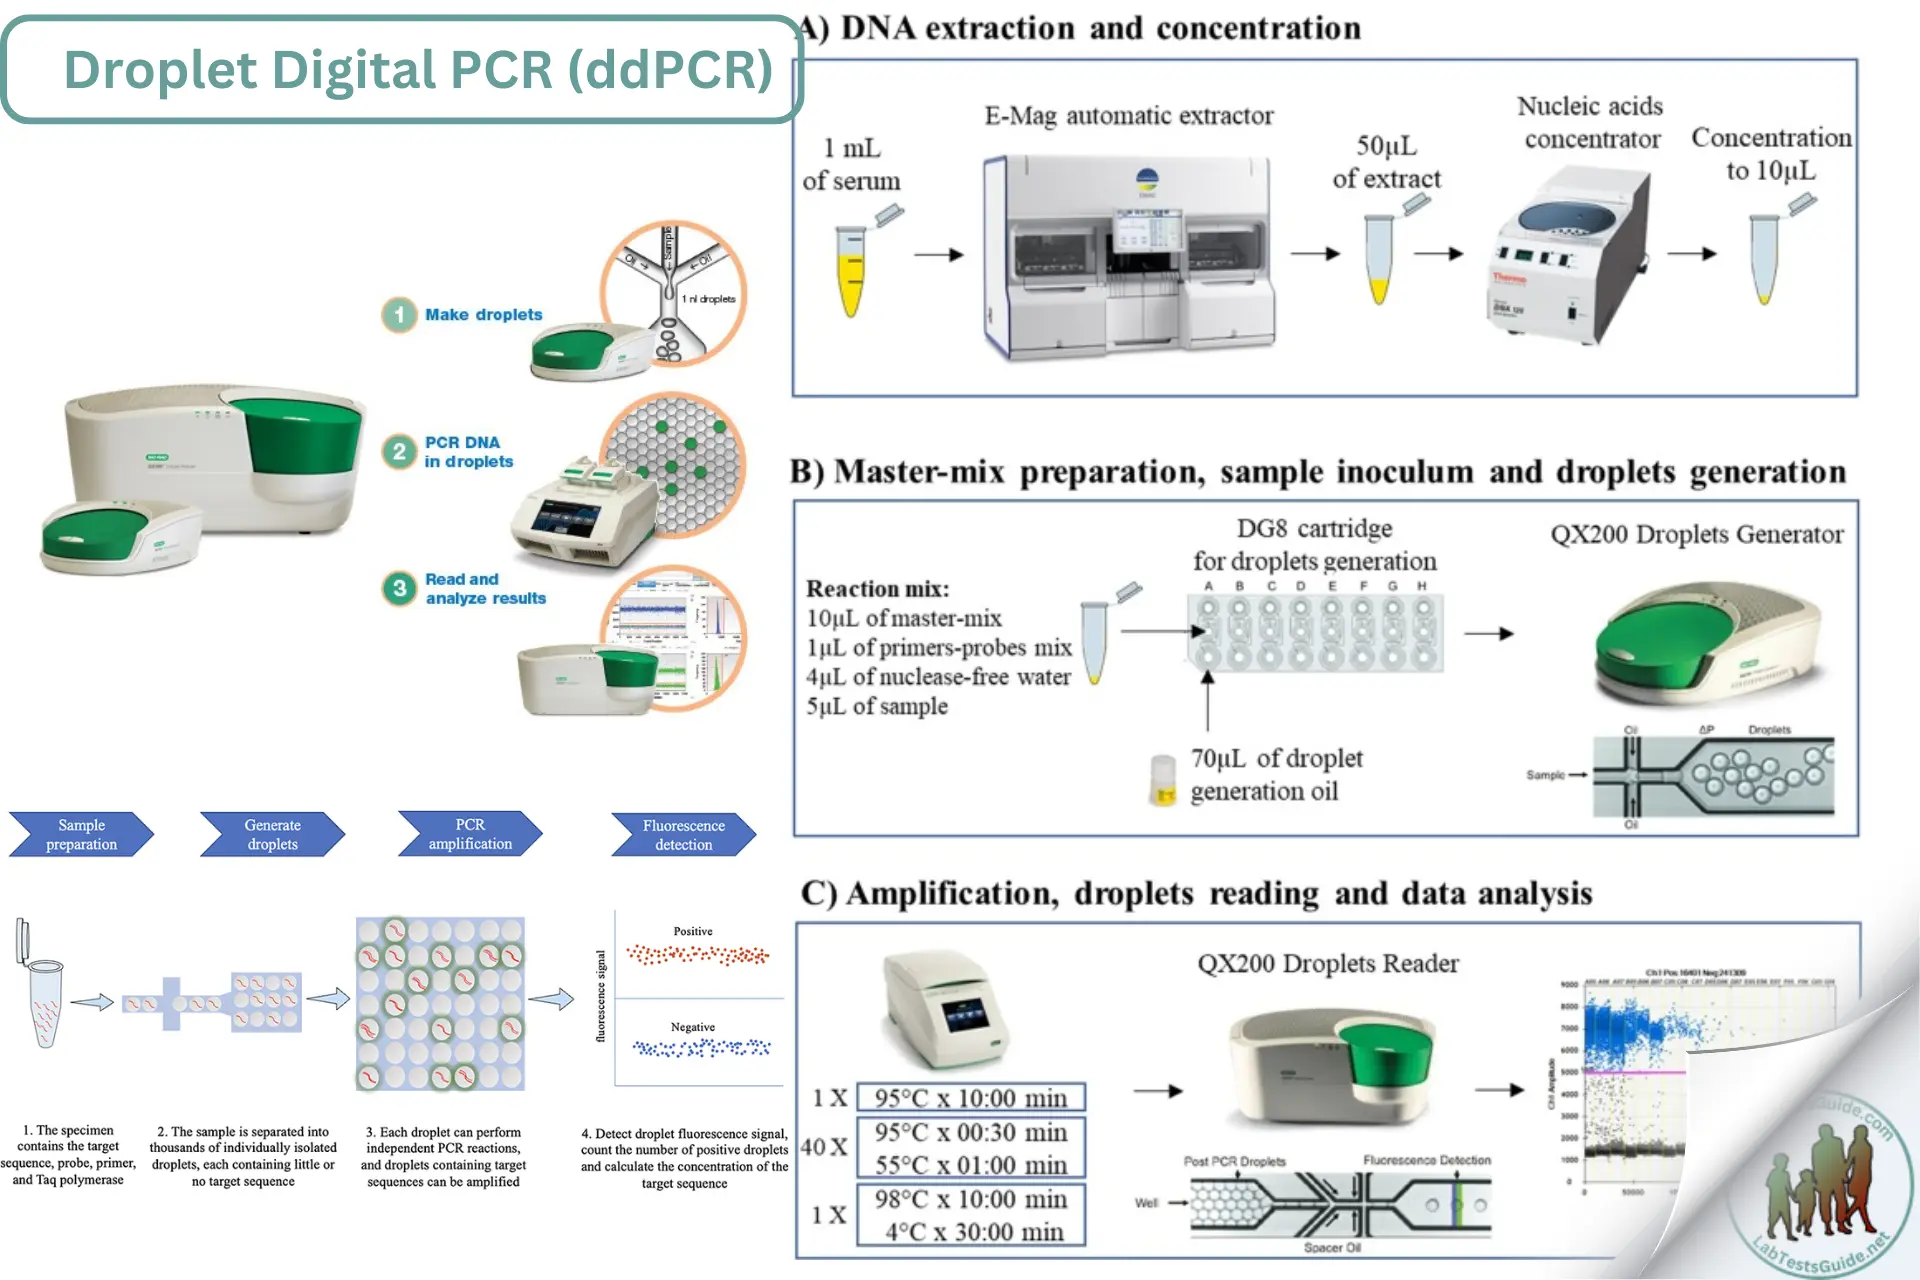 Droplet Digital PCR (ddPCR)